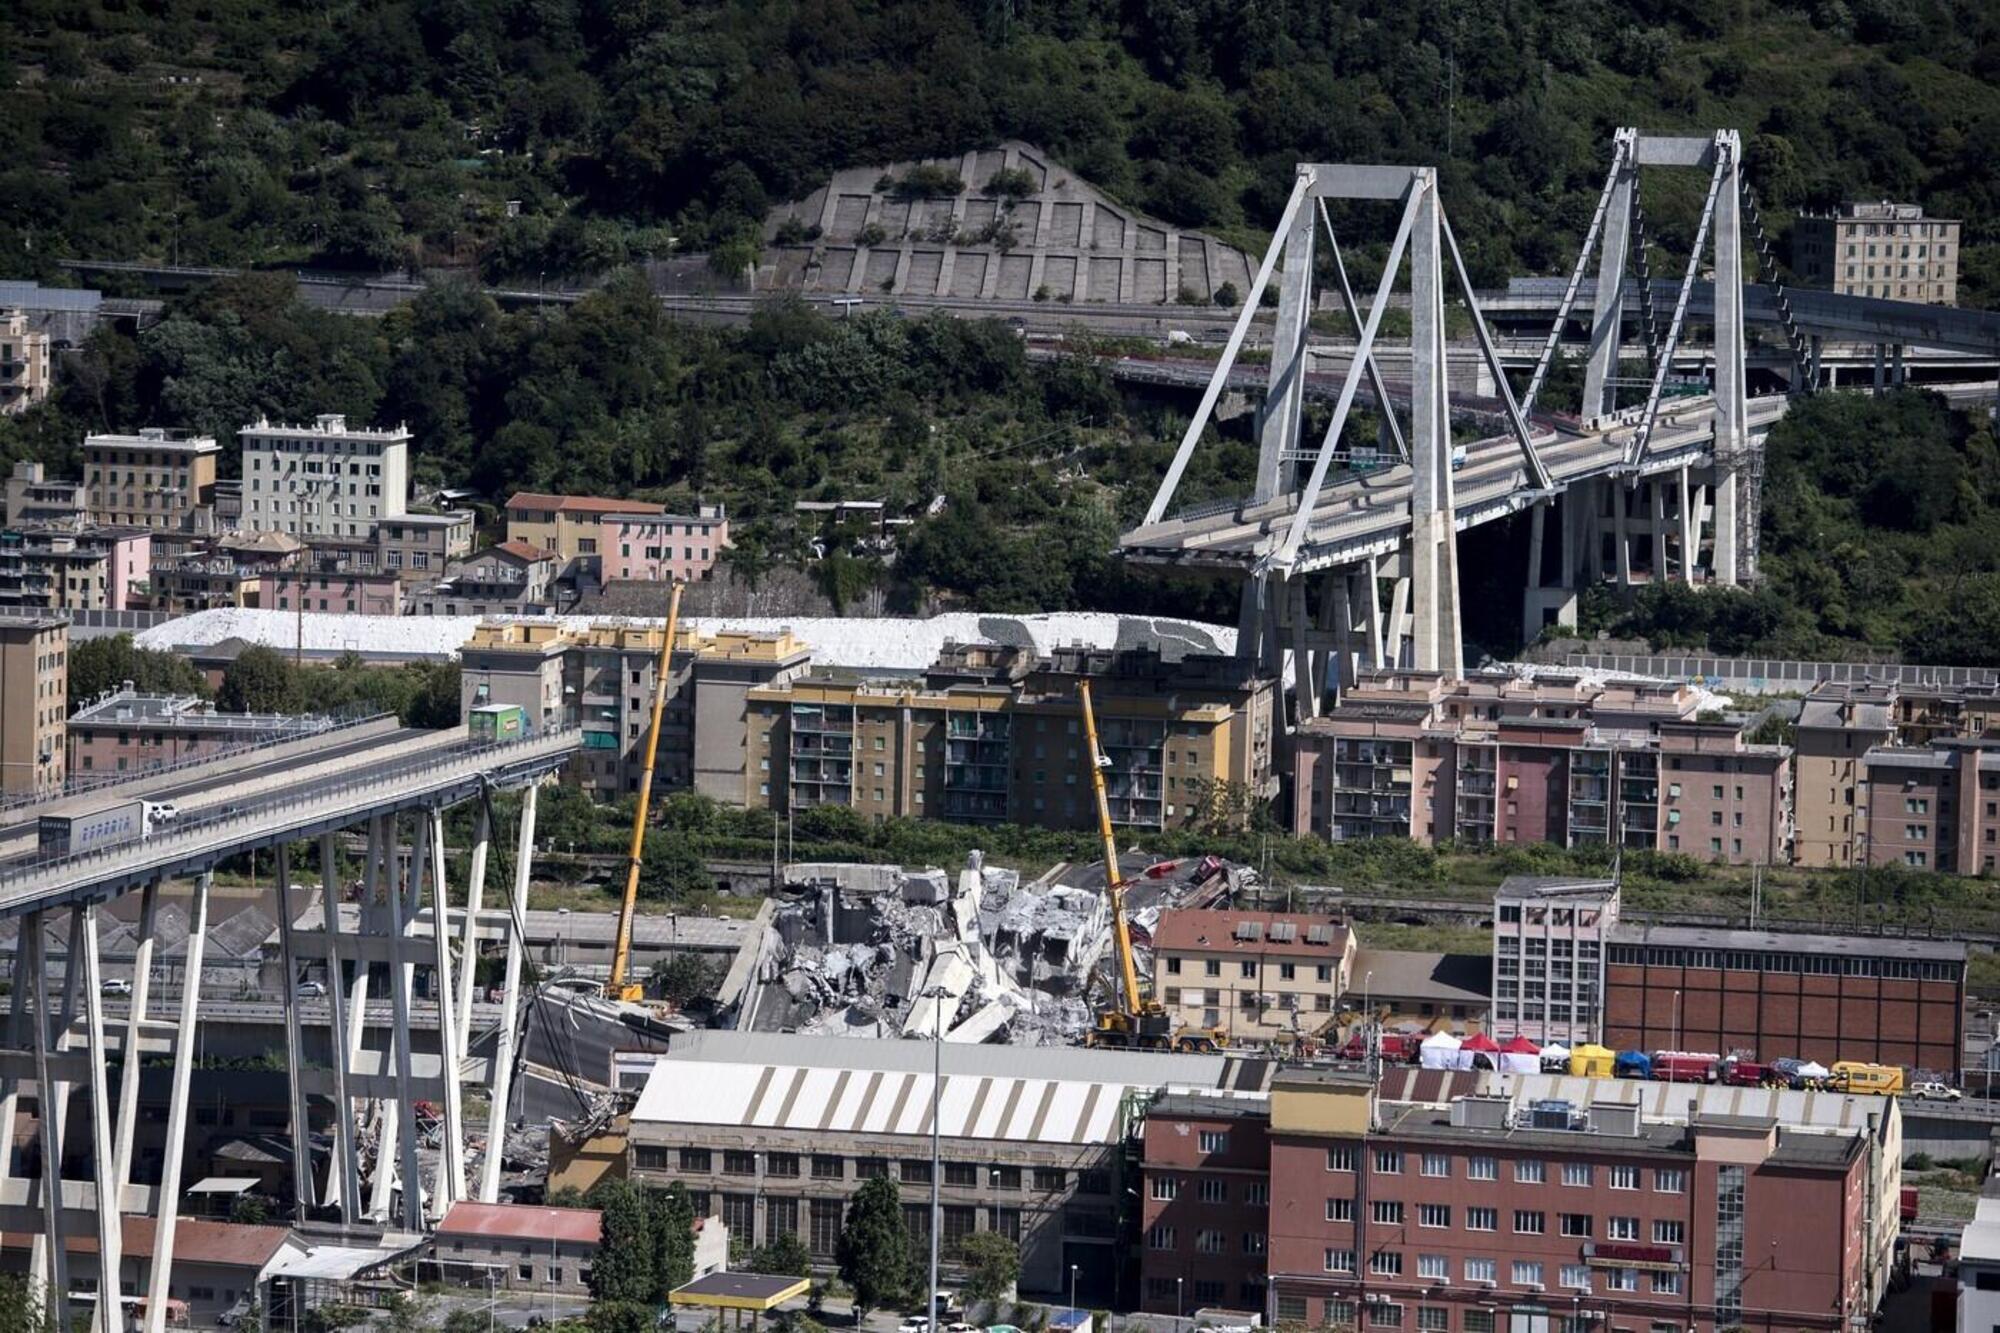 Il ponte Morandi di Genova dopo il crollo